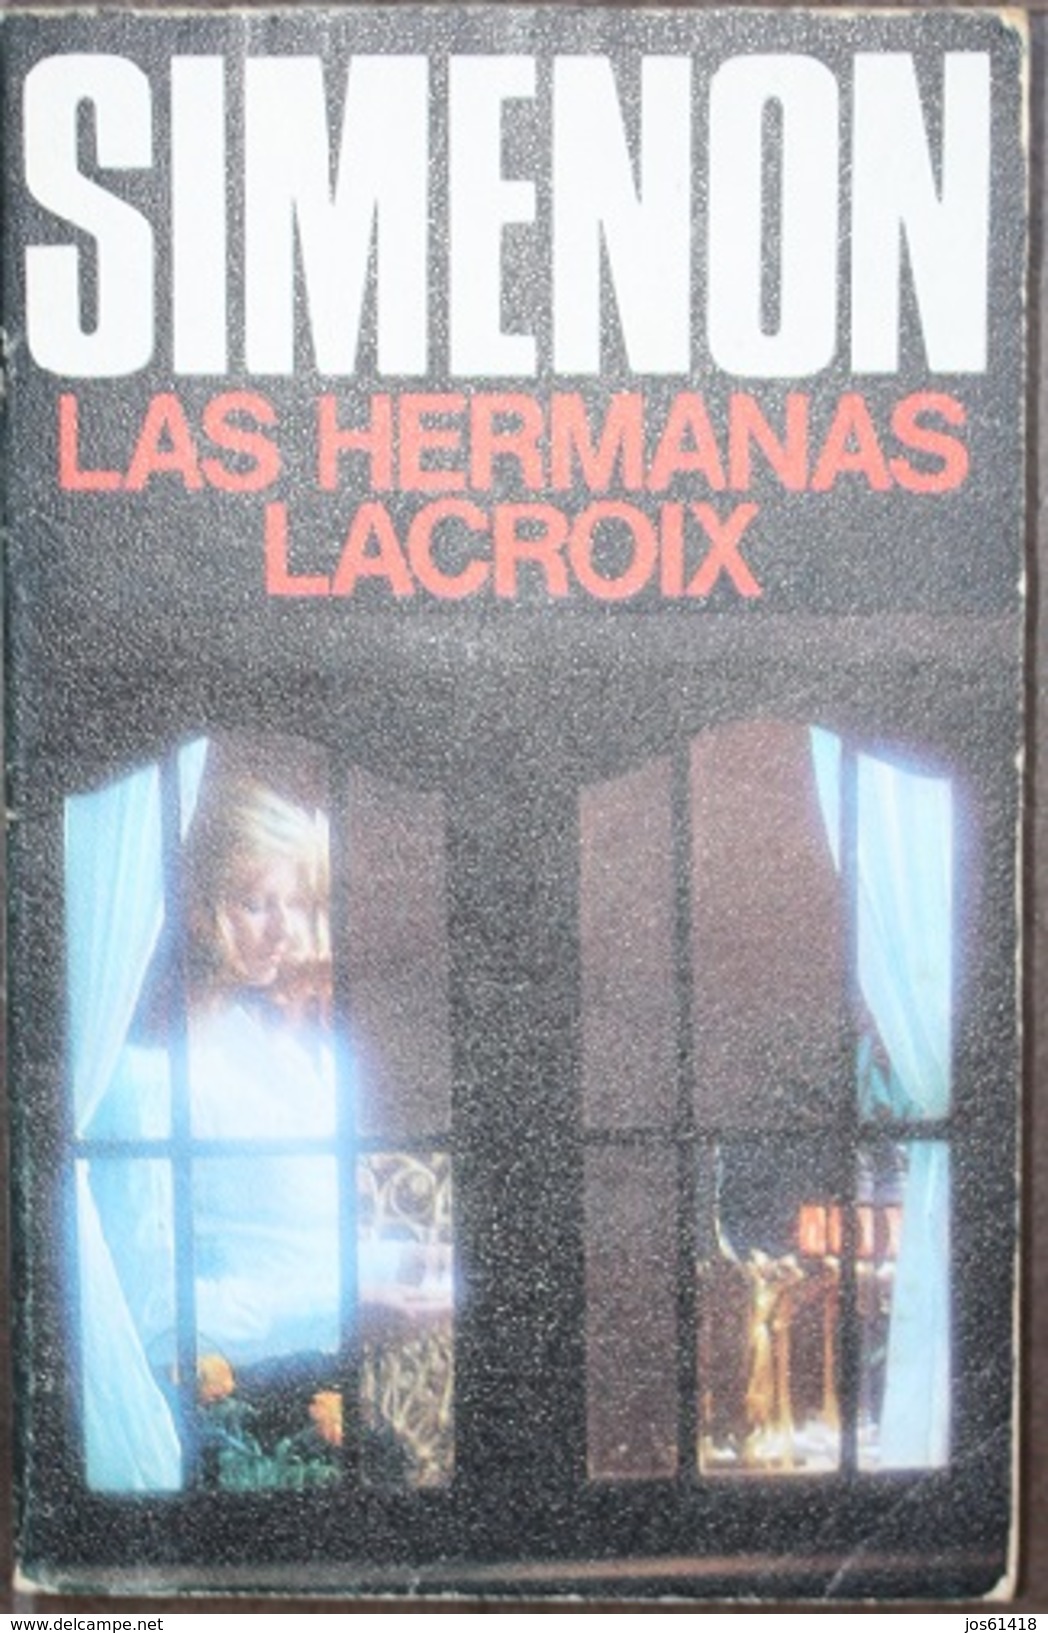 Las Hermanas Lacroix  - George Simenón     Las Novelas De Simenón  Nº 44 - Acción, Aventuras